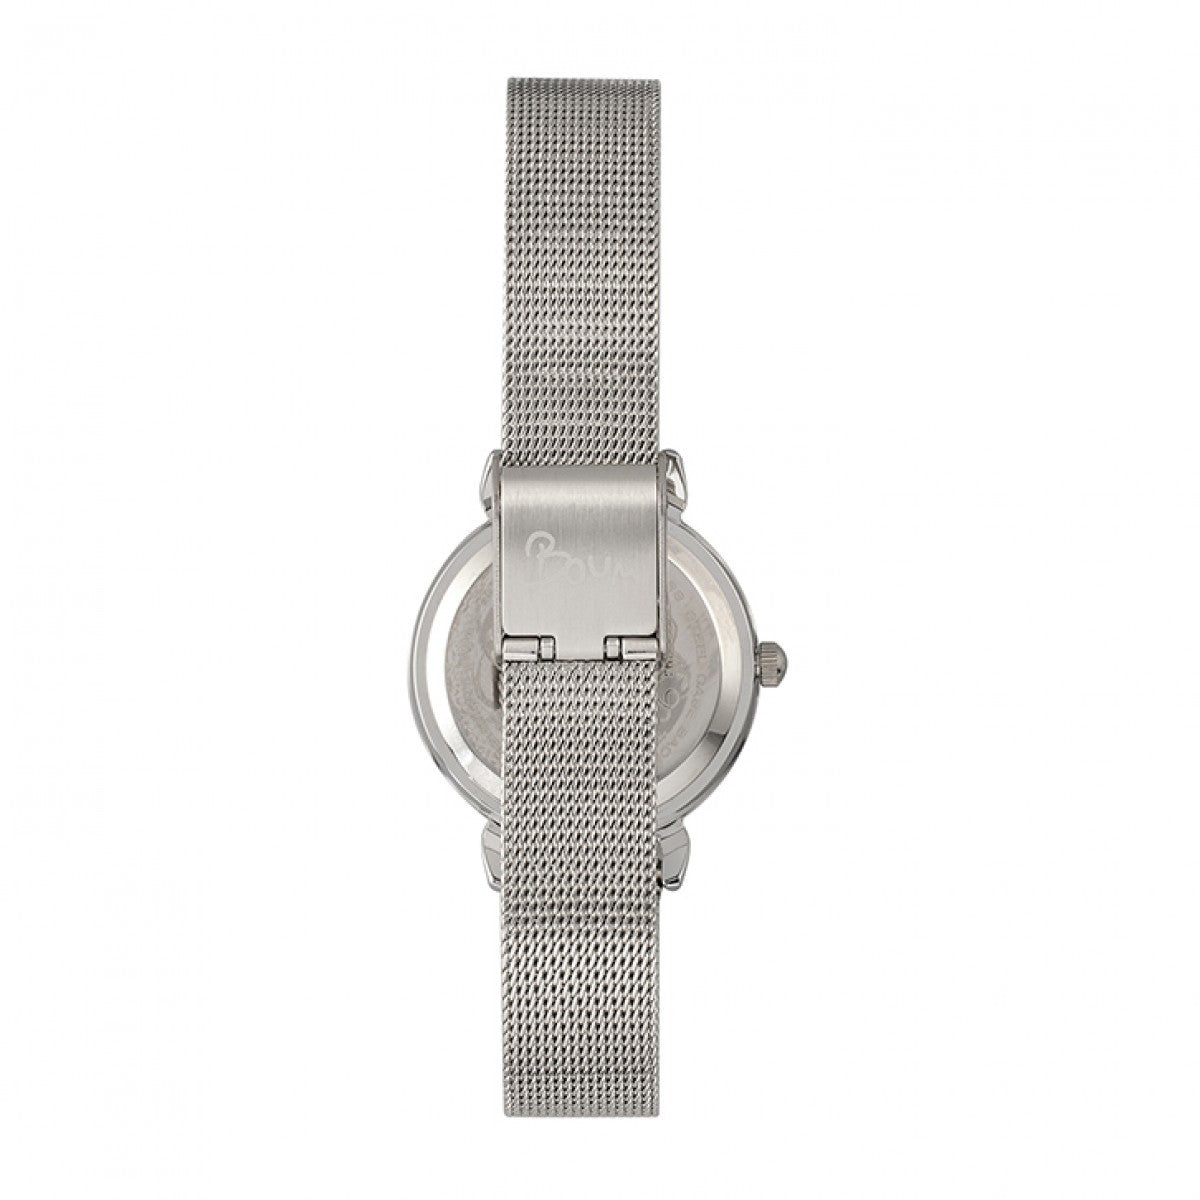 Boum Feroce Mesh-Bracelet Watch - Silver - BOUBM5203